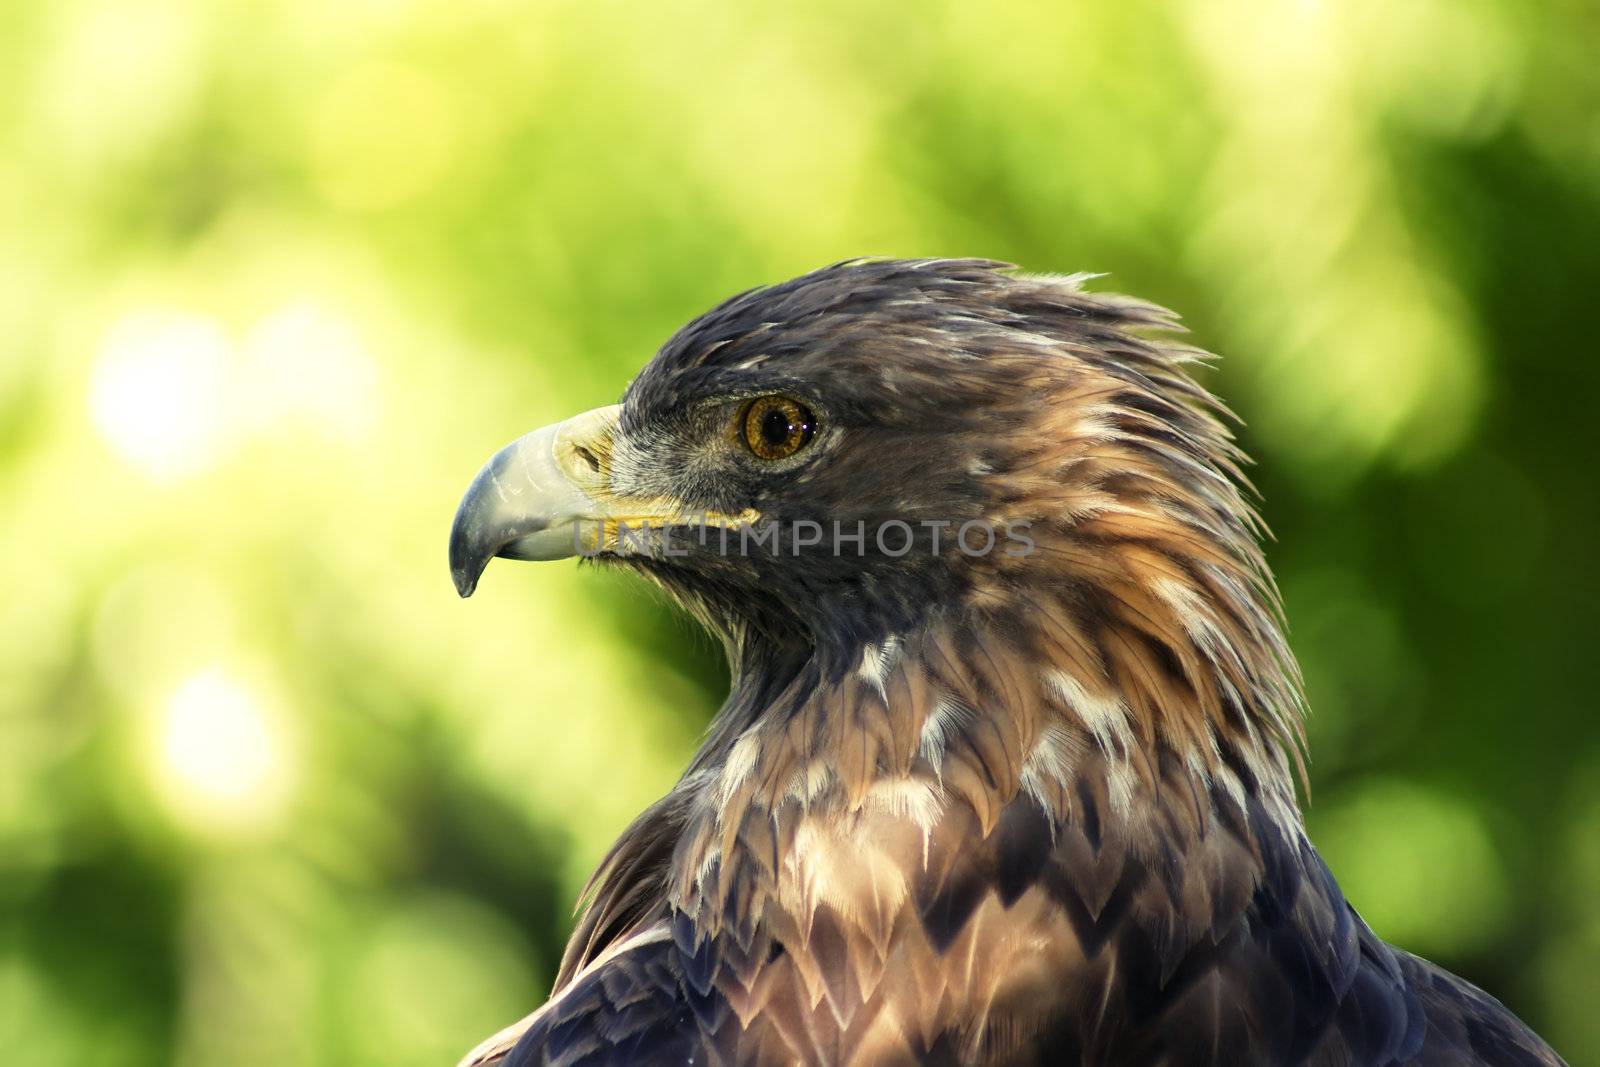 Golden eagle portrait by Mirage3